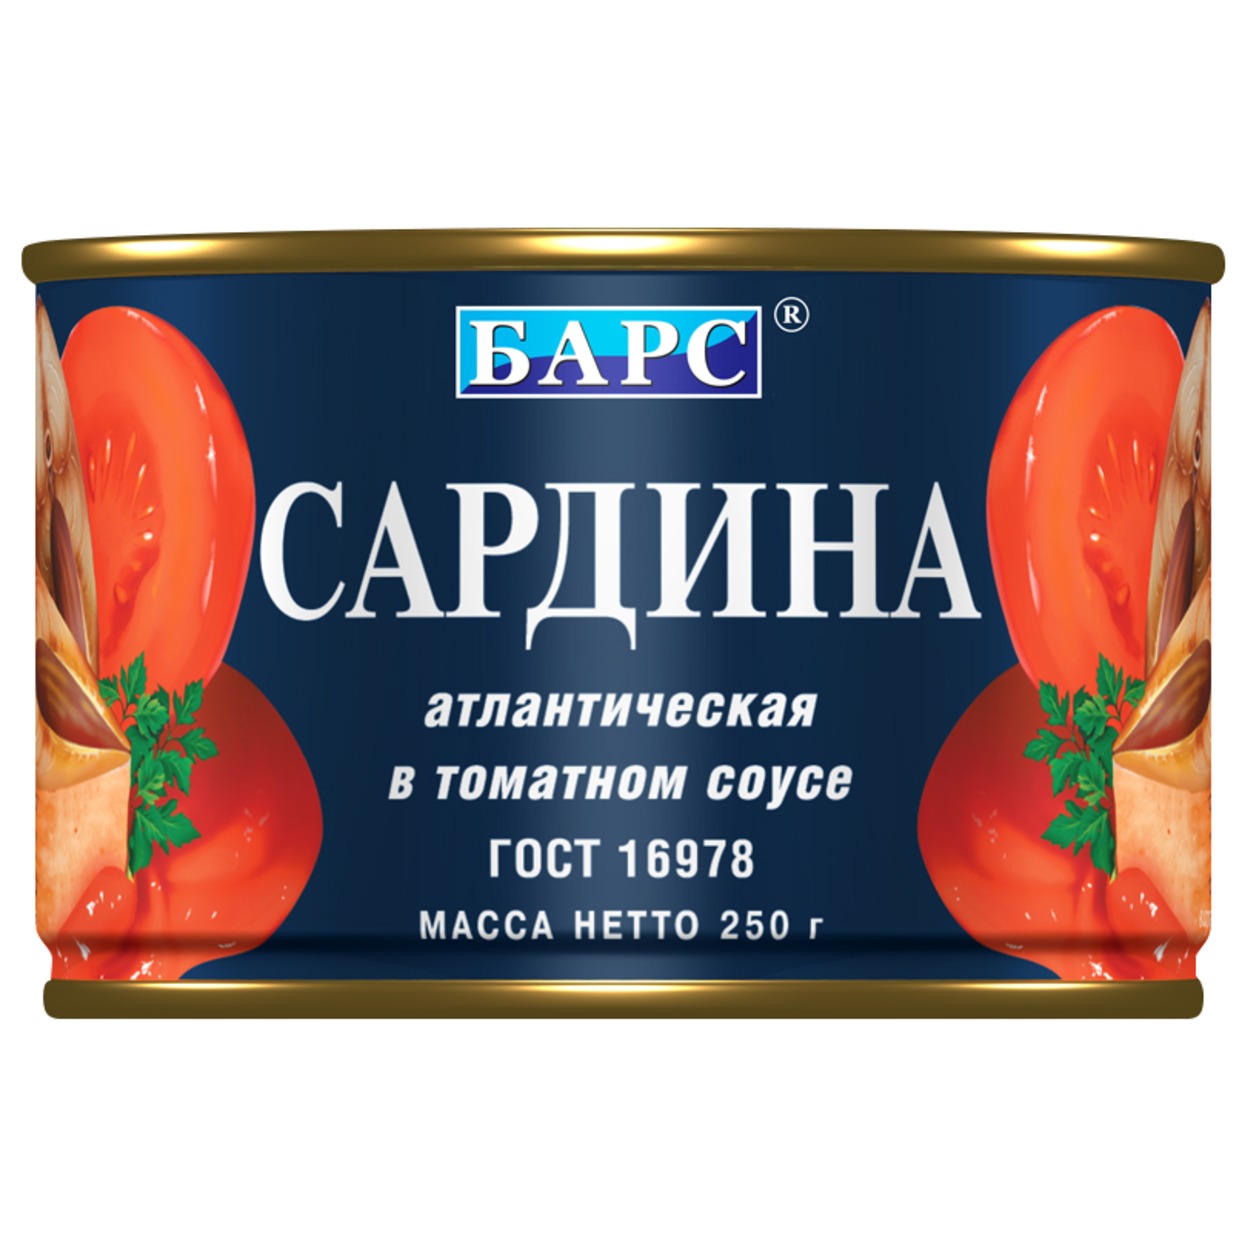 Сардина атлантическая в томатном соусе ГОСТ 250 грамм БАРС по акции в Пятерочке